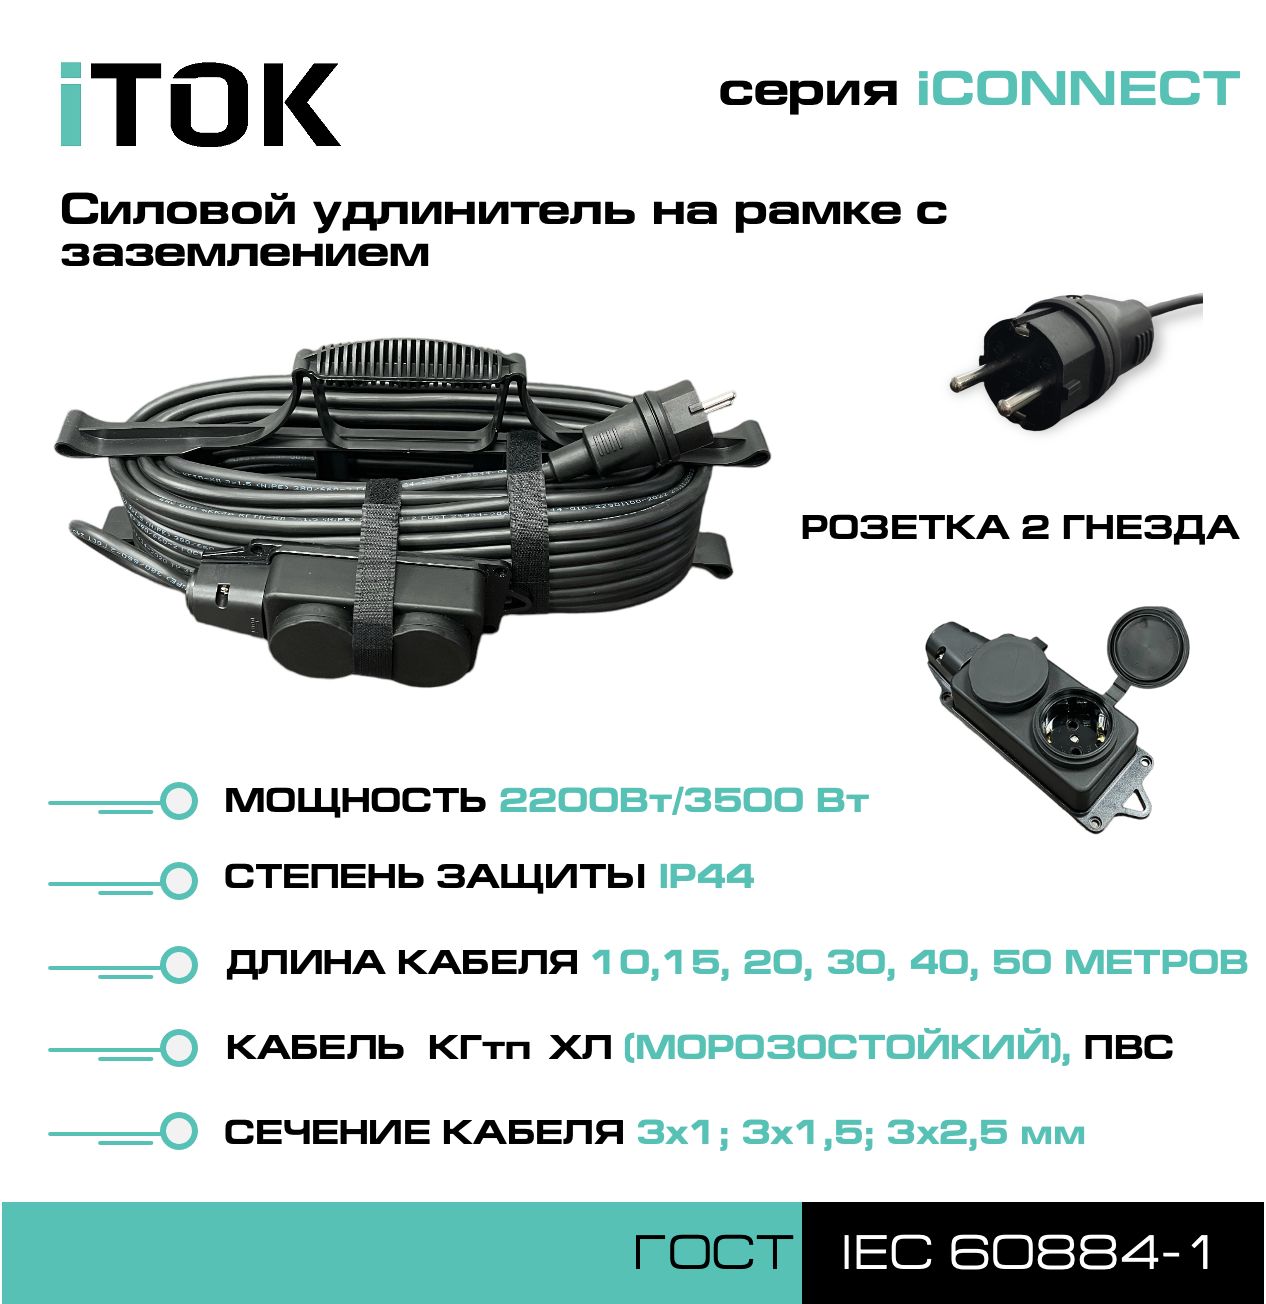 фото Удлинитель на рамке с заземлением серии itok iconnect пвс 3х1,5 мм 2 гнезда ip44 20 м